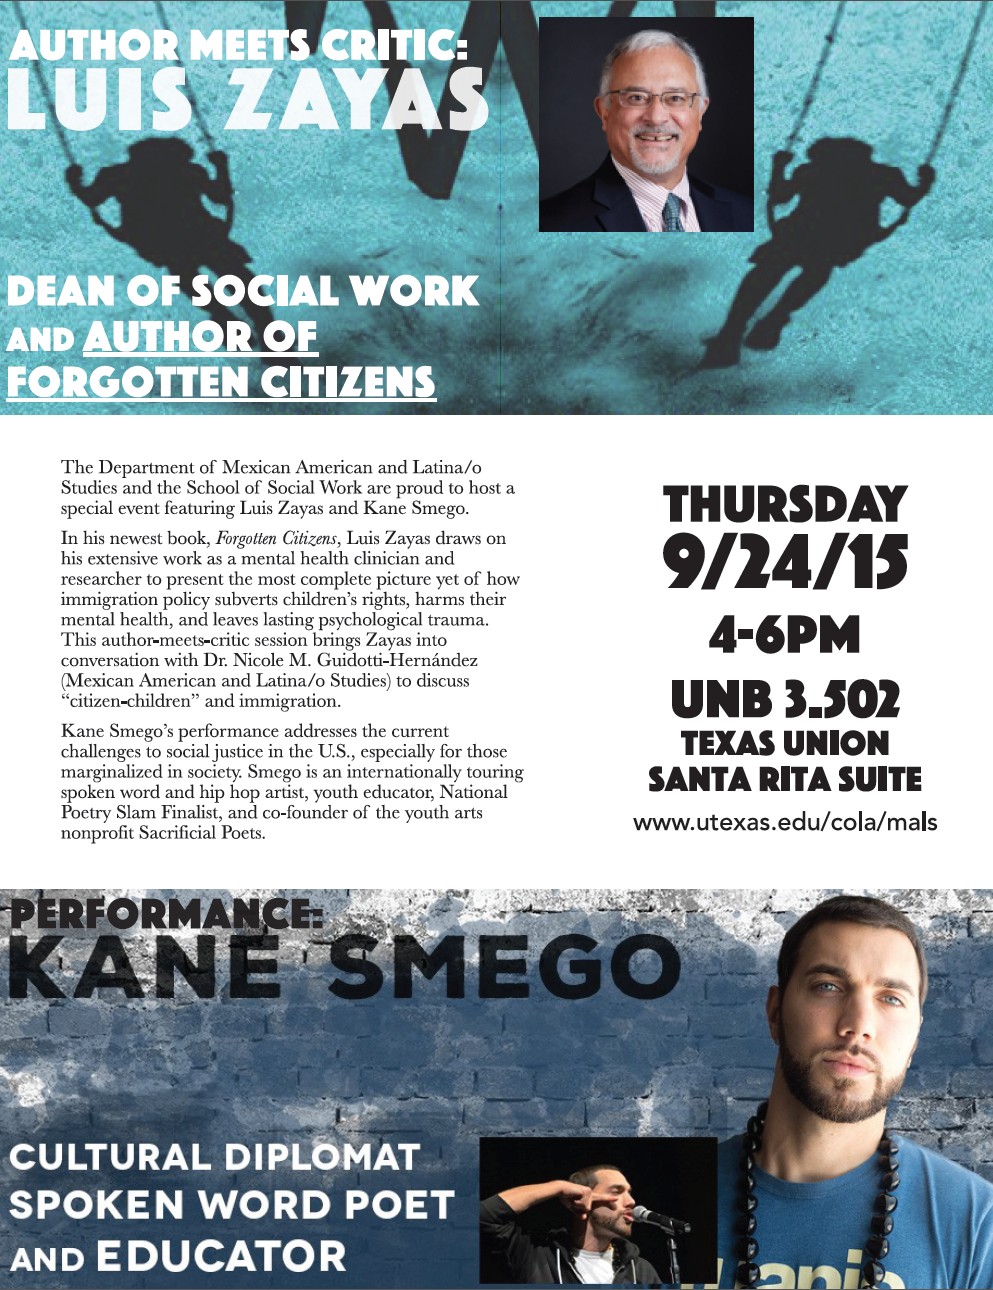 Poster for Luis Zayas & Kane Smego event